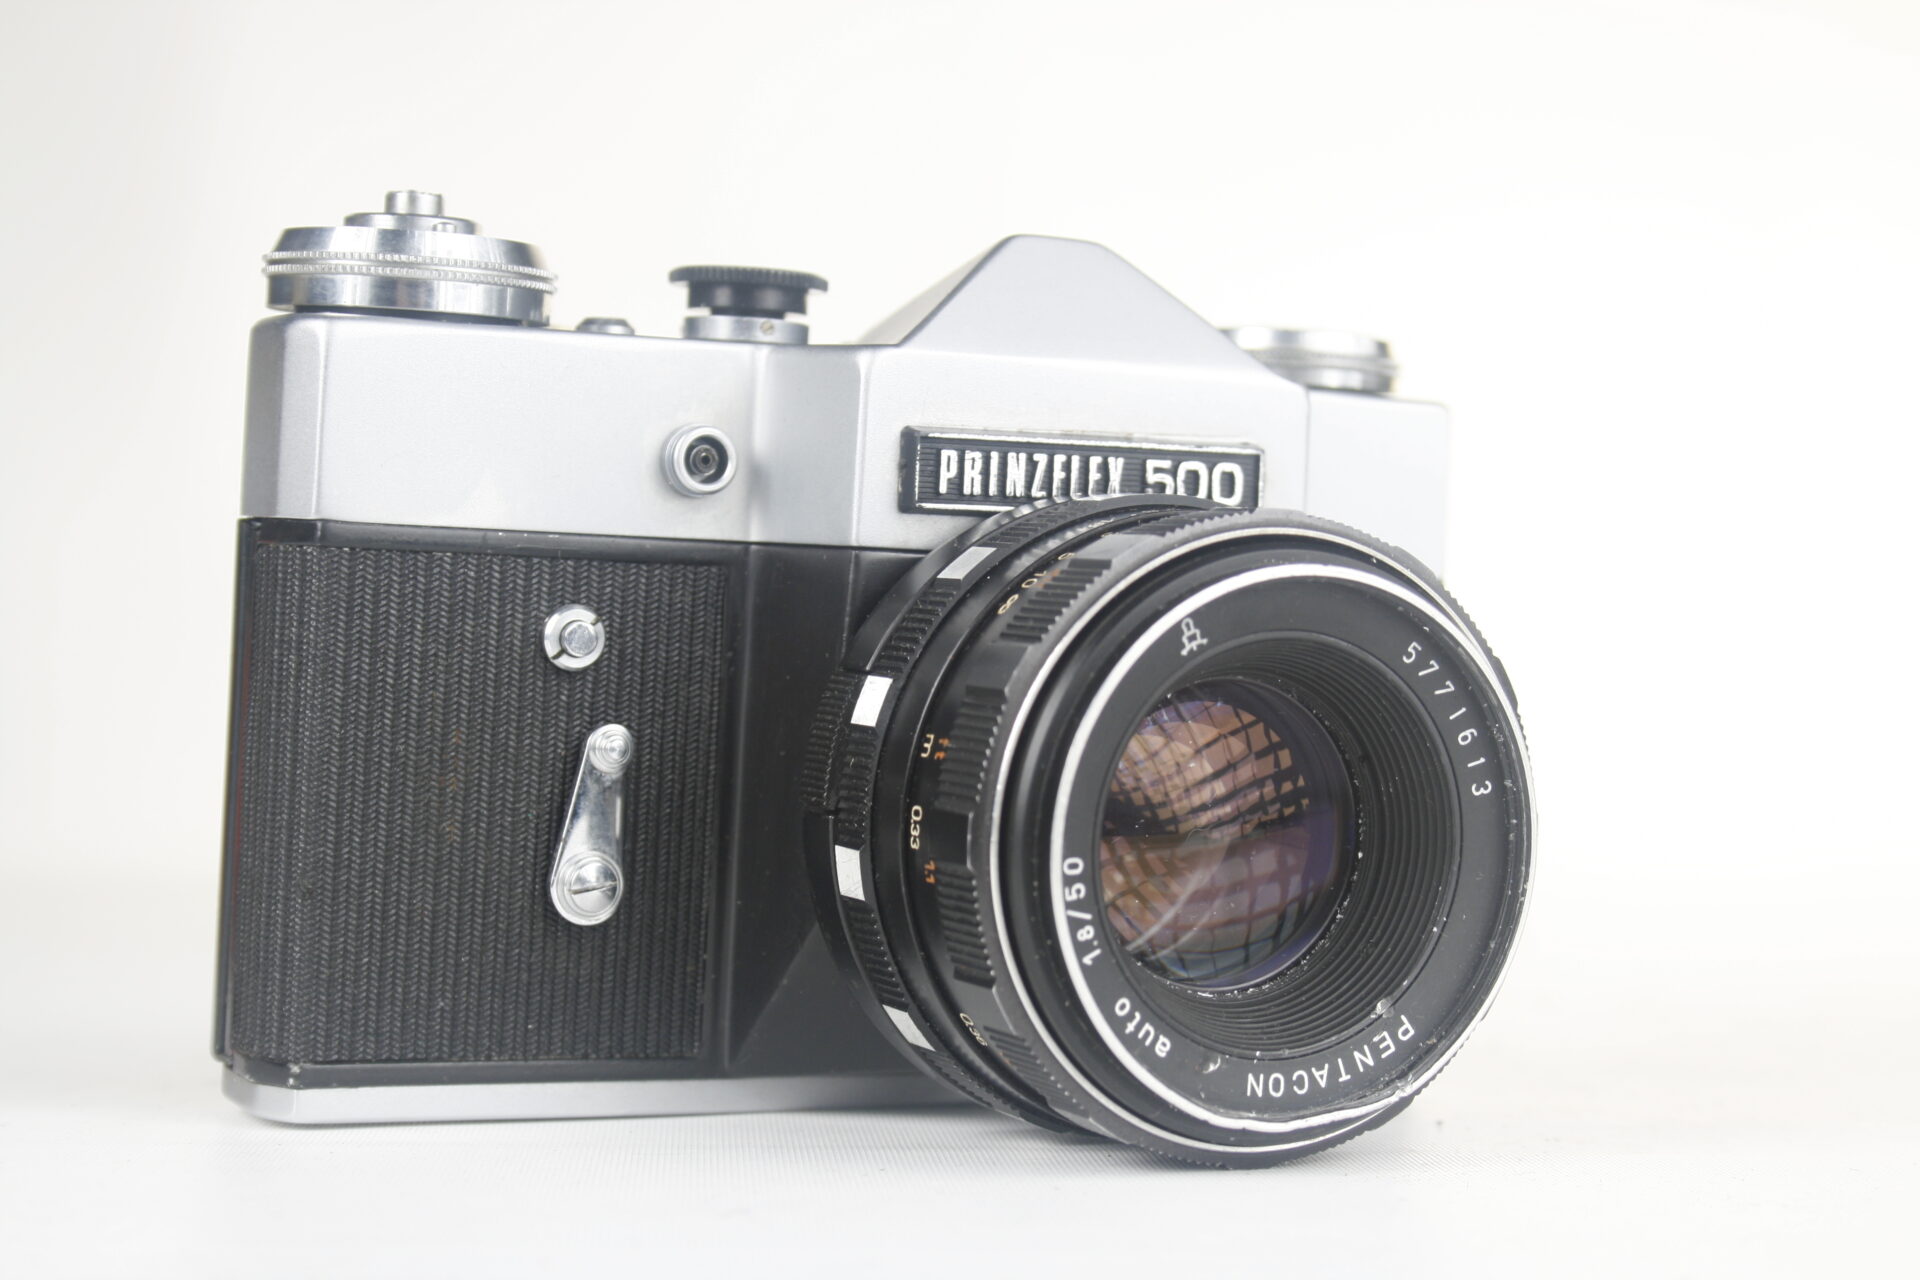 Prinzflex 500 (Zenit B. Export versie Engeland). SLR camera. 35mm film. 1972. USSR.